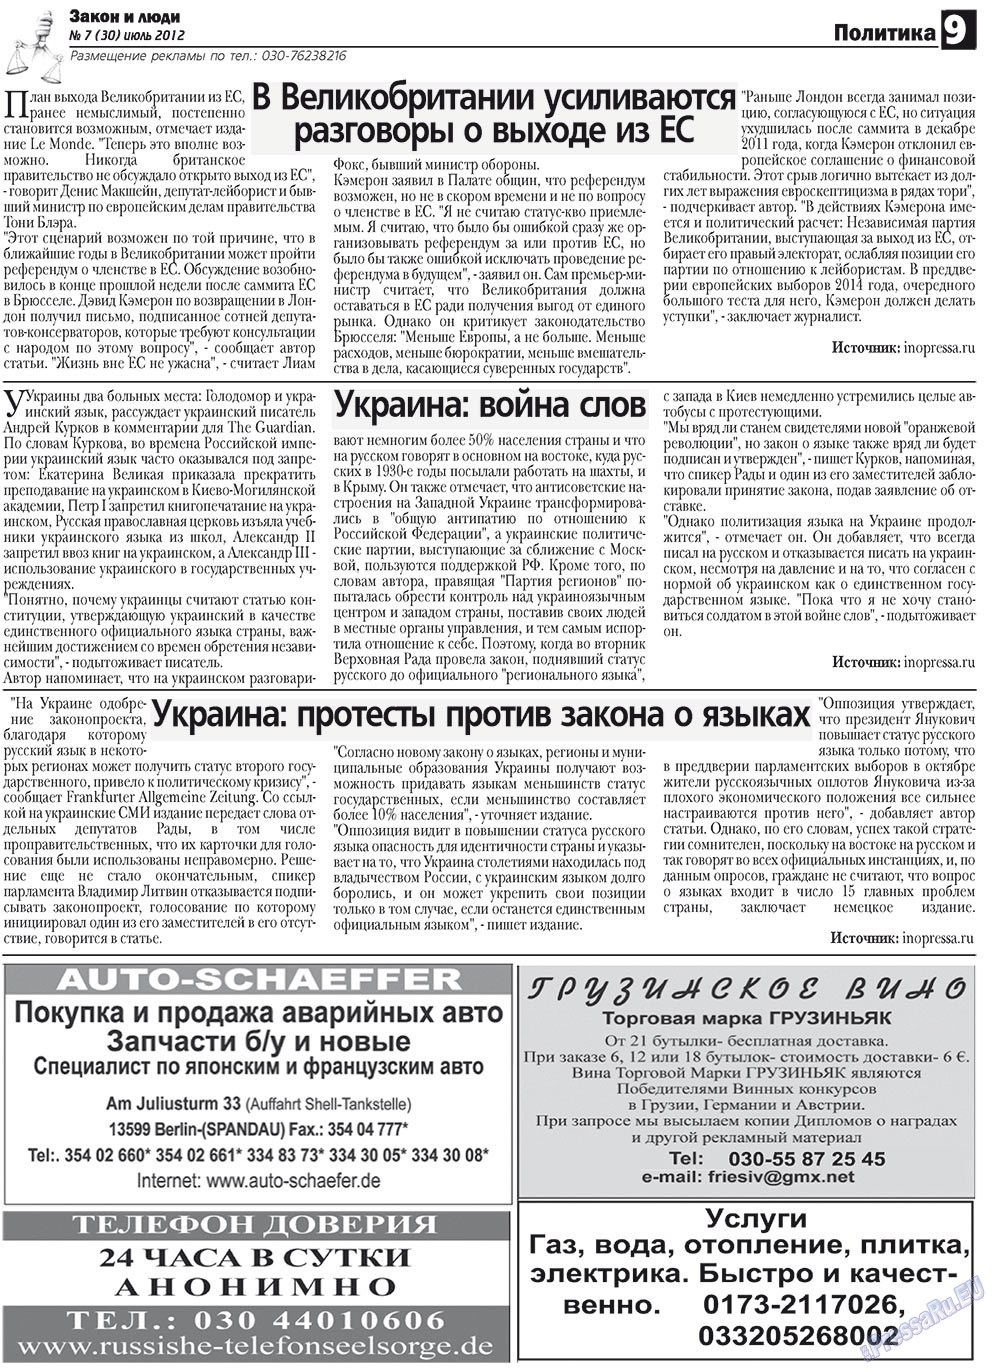 Закон и люди, газета. 2012 №7 стр.9